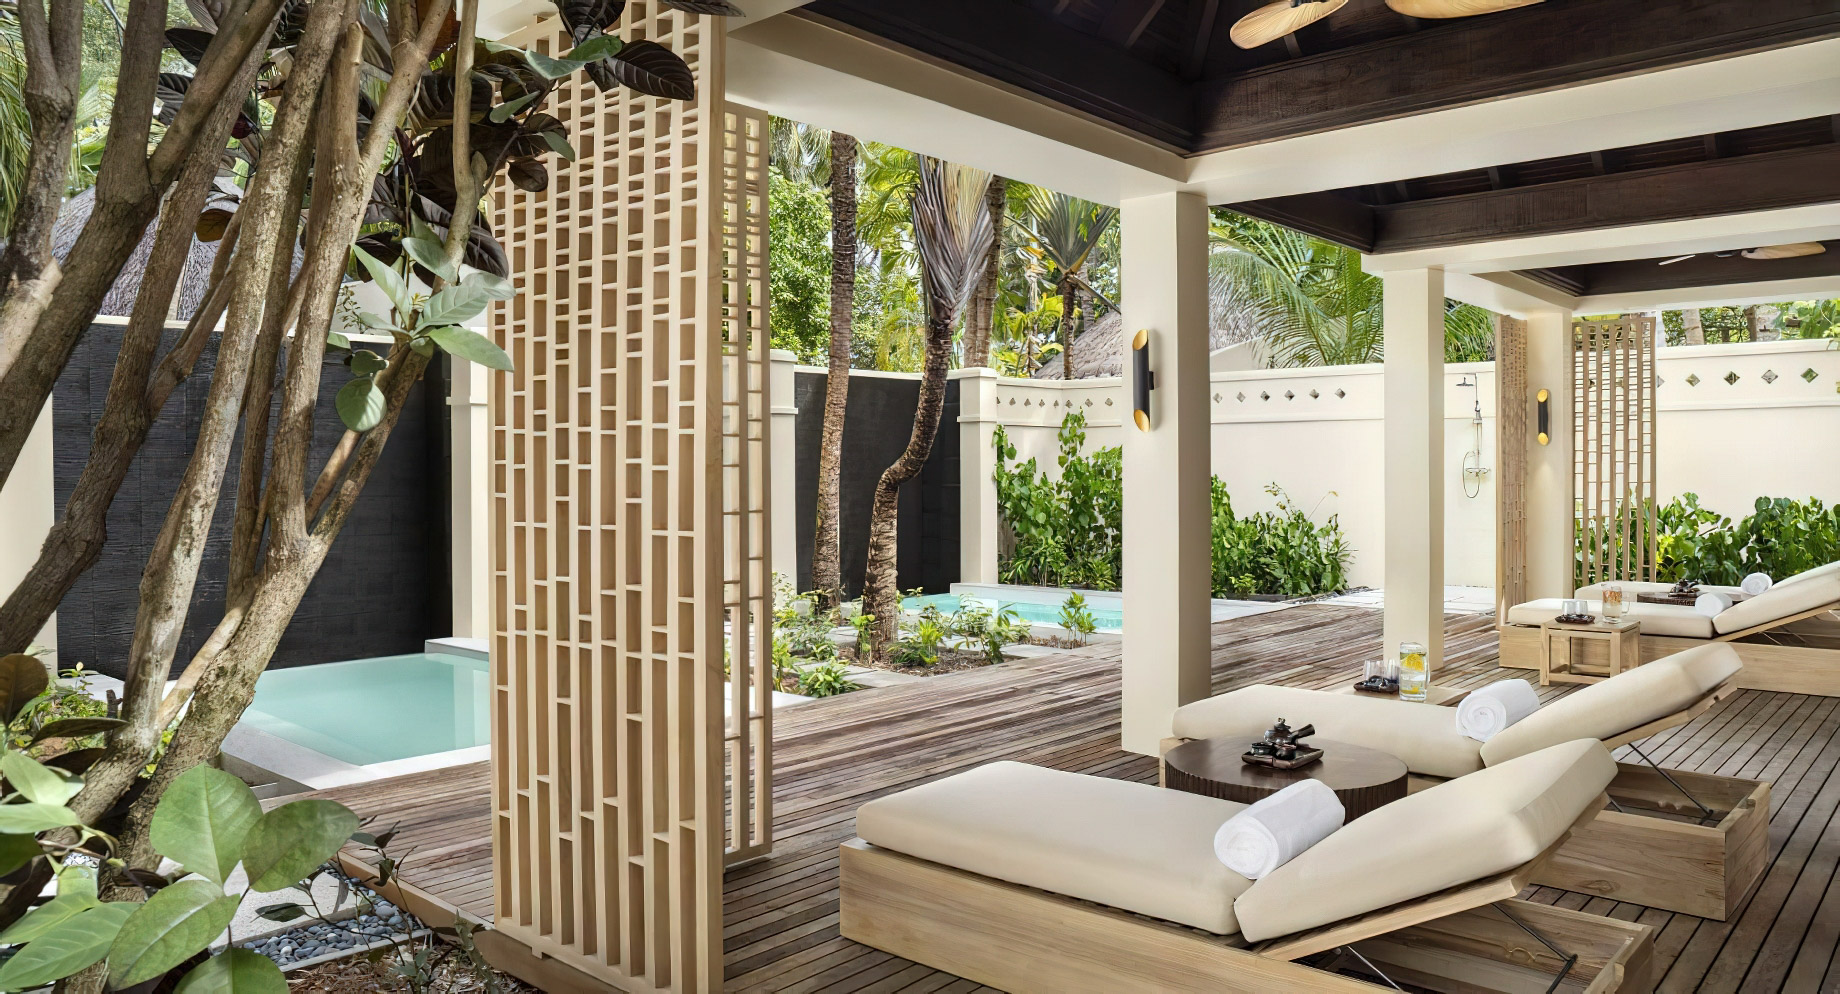 Anantara Veli Maldives Resort – South Male Atoll, Maldives – Spa Outdoor Pool Deck